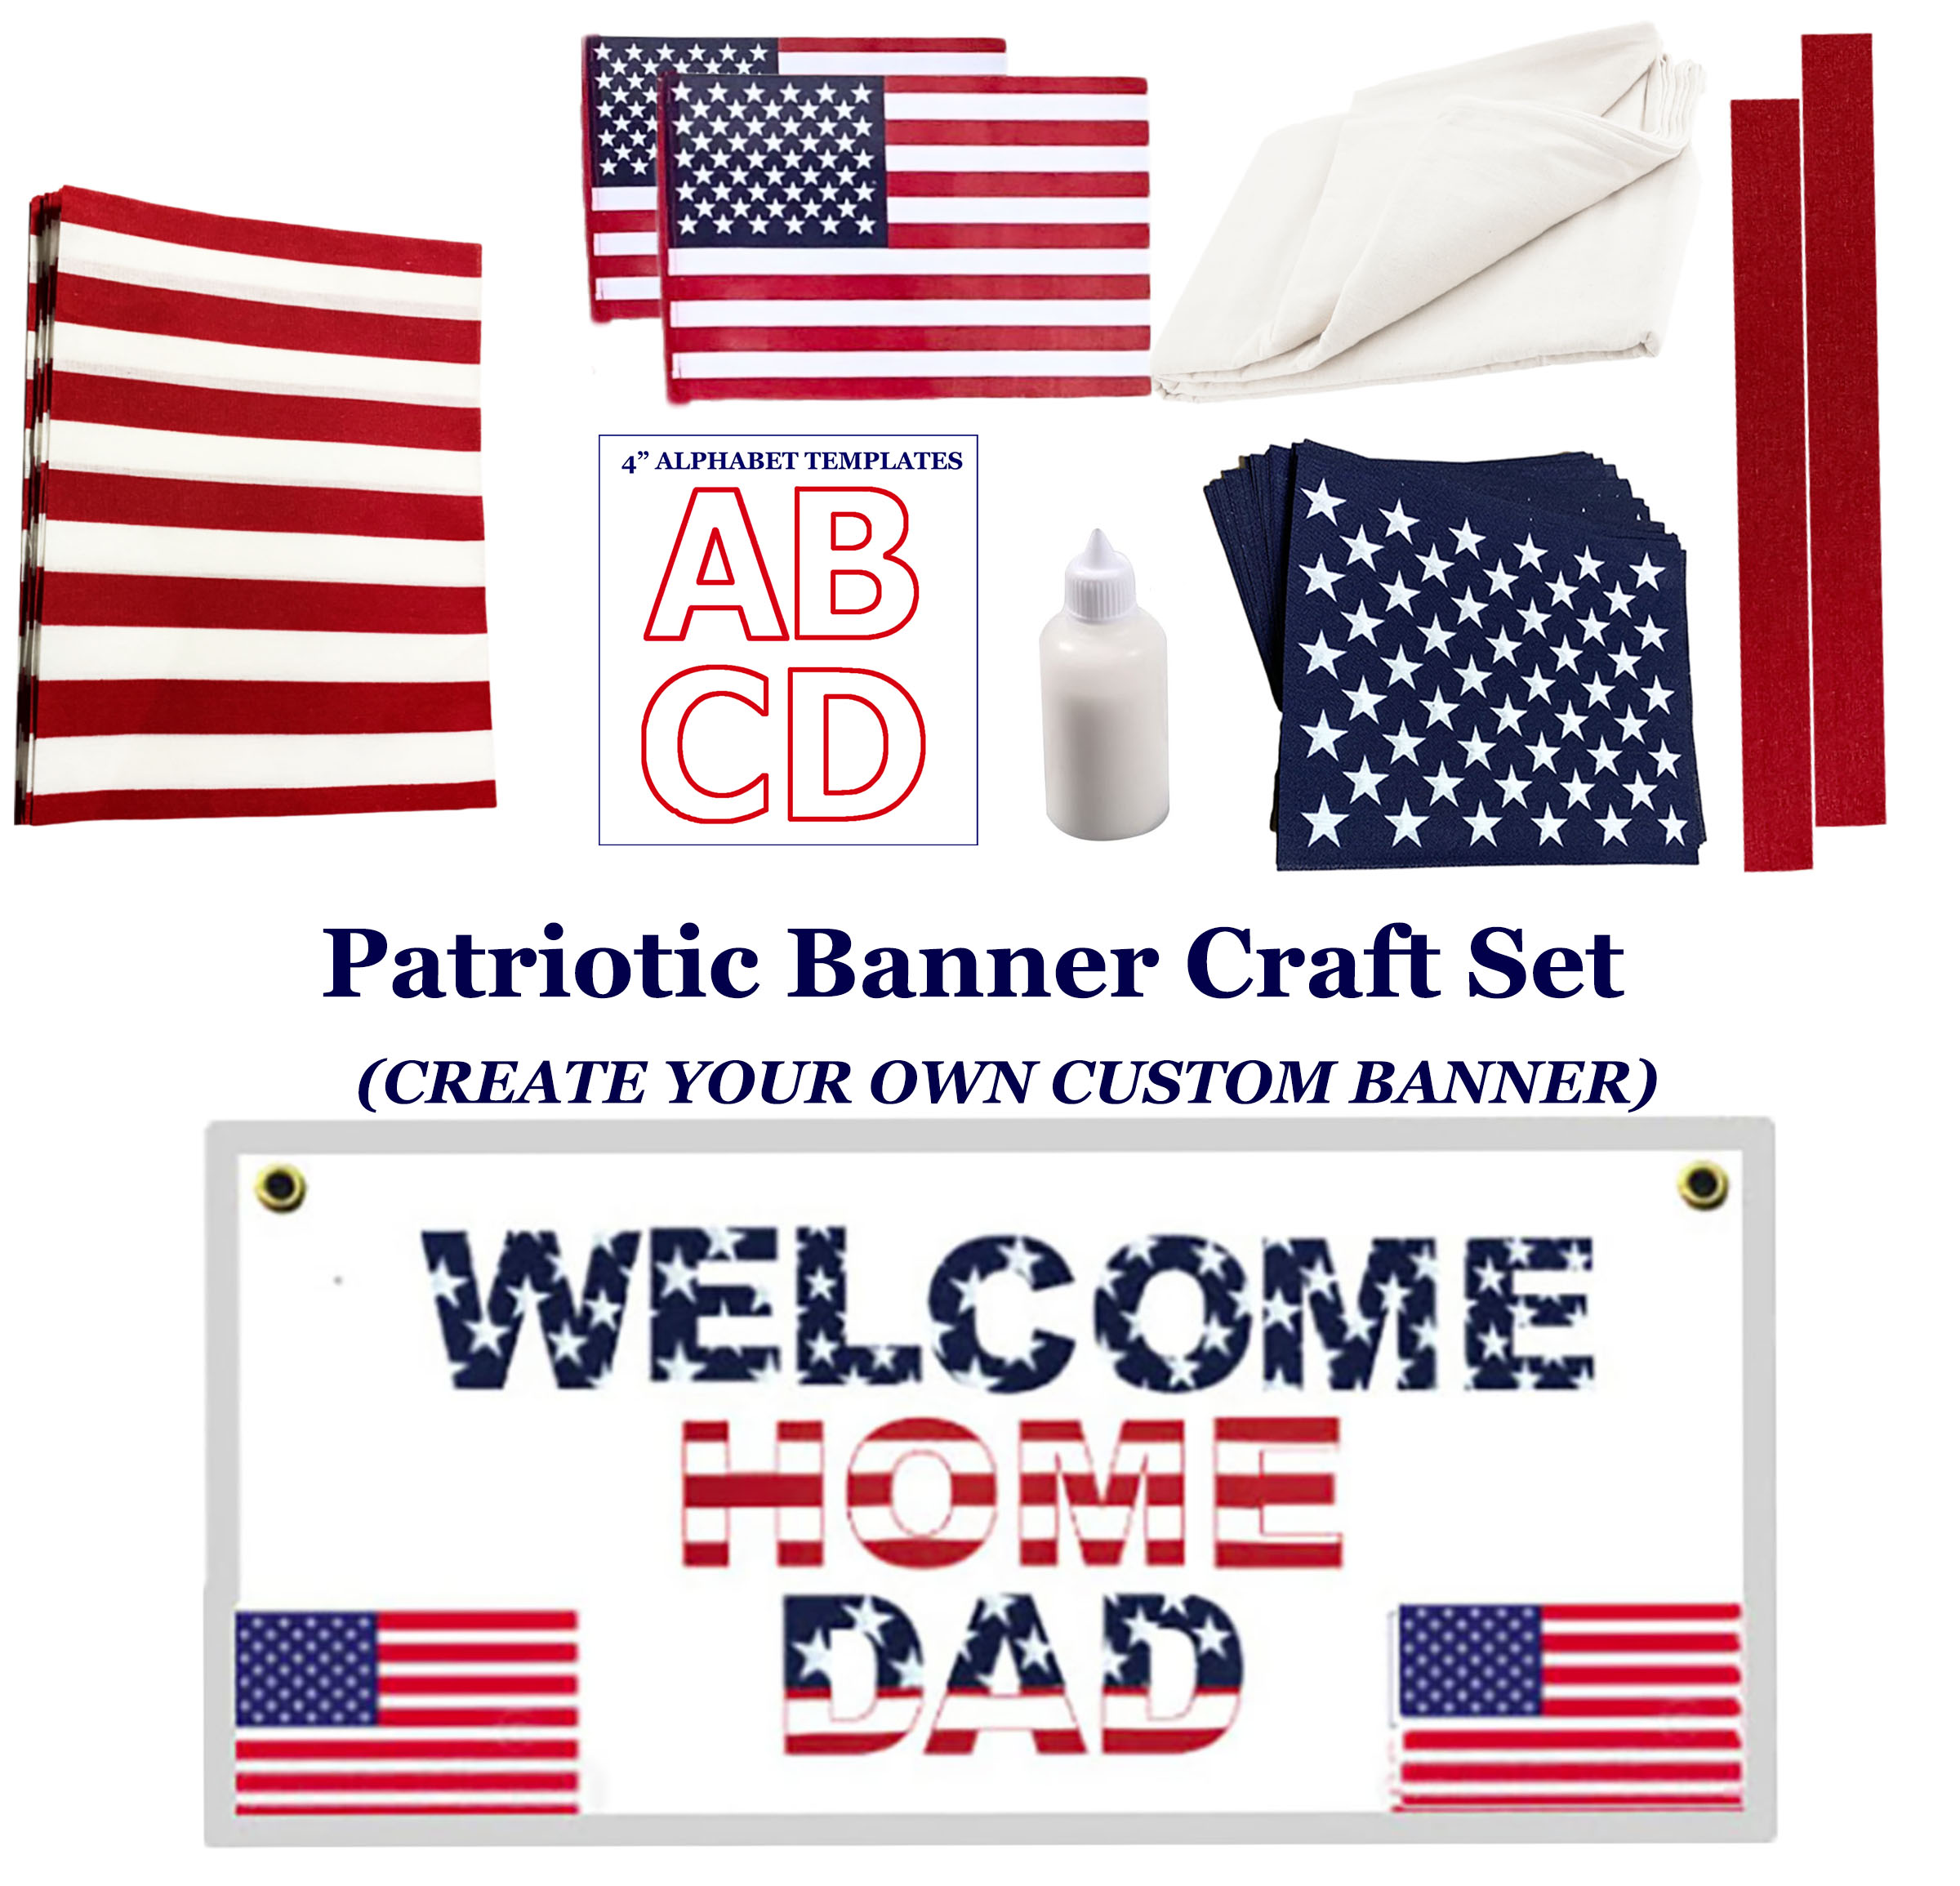 DIY Banner - Custom Banner Kit